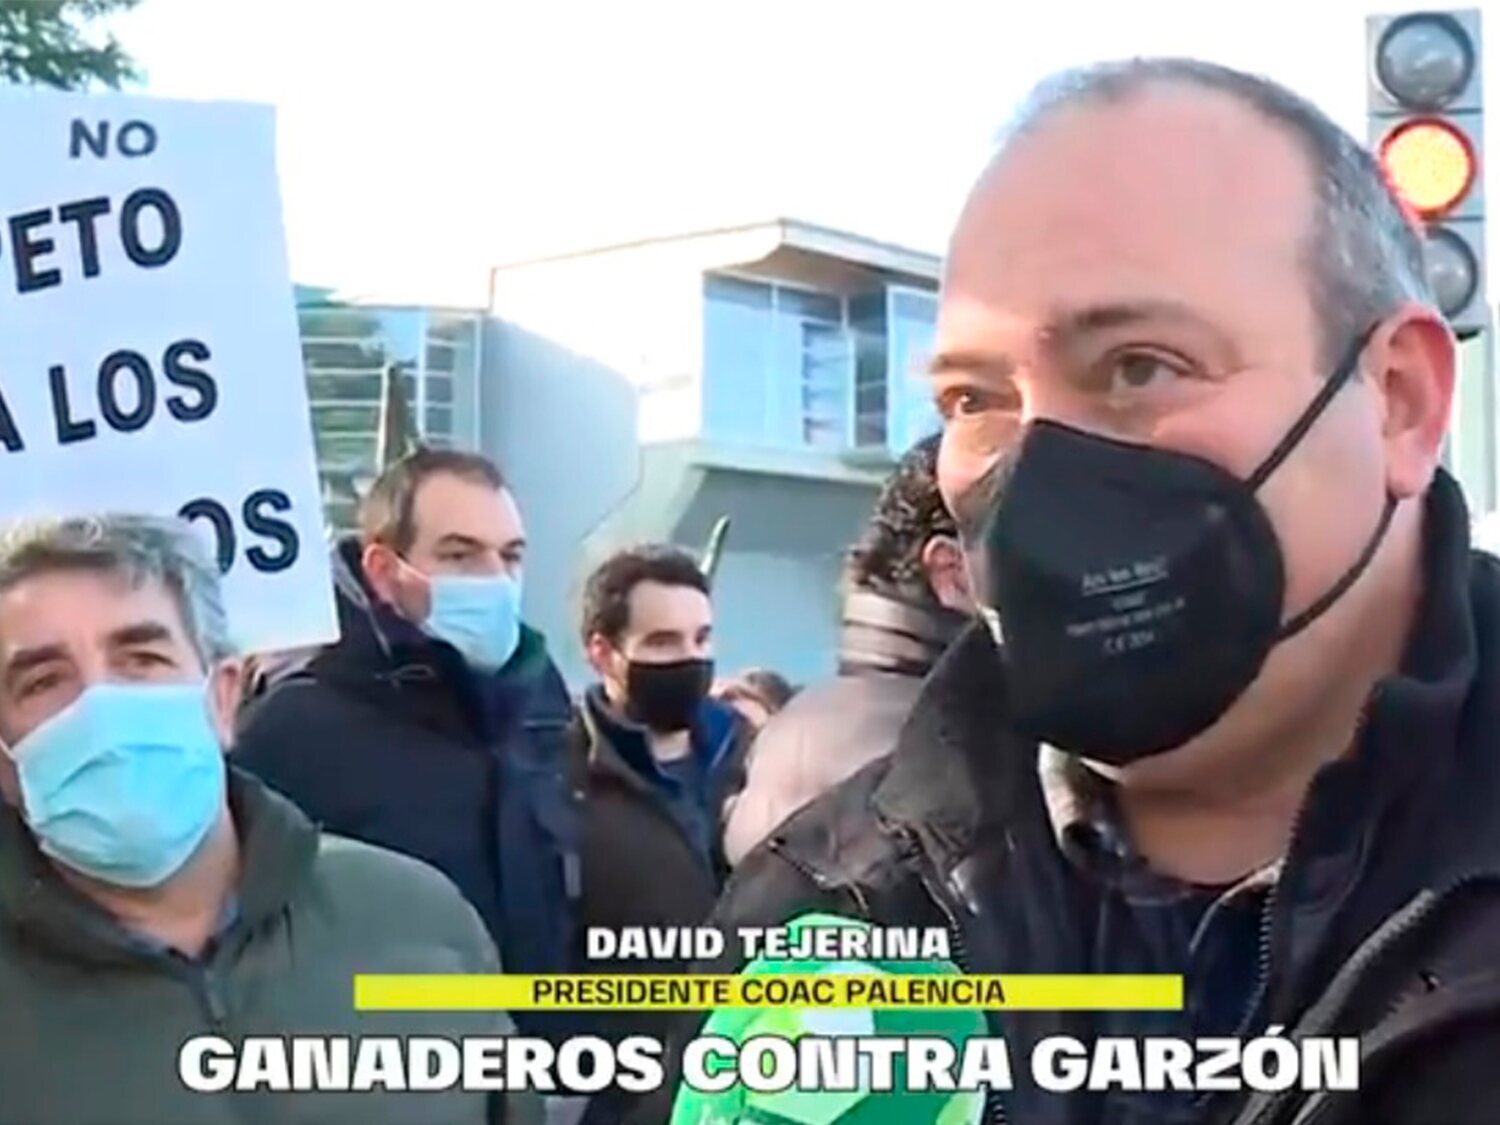 Un ganadero asiste a una protesta contra Garzón y acaba afirmando que está de acuerdo con él